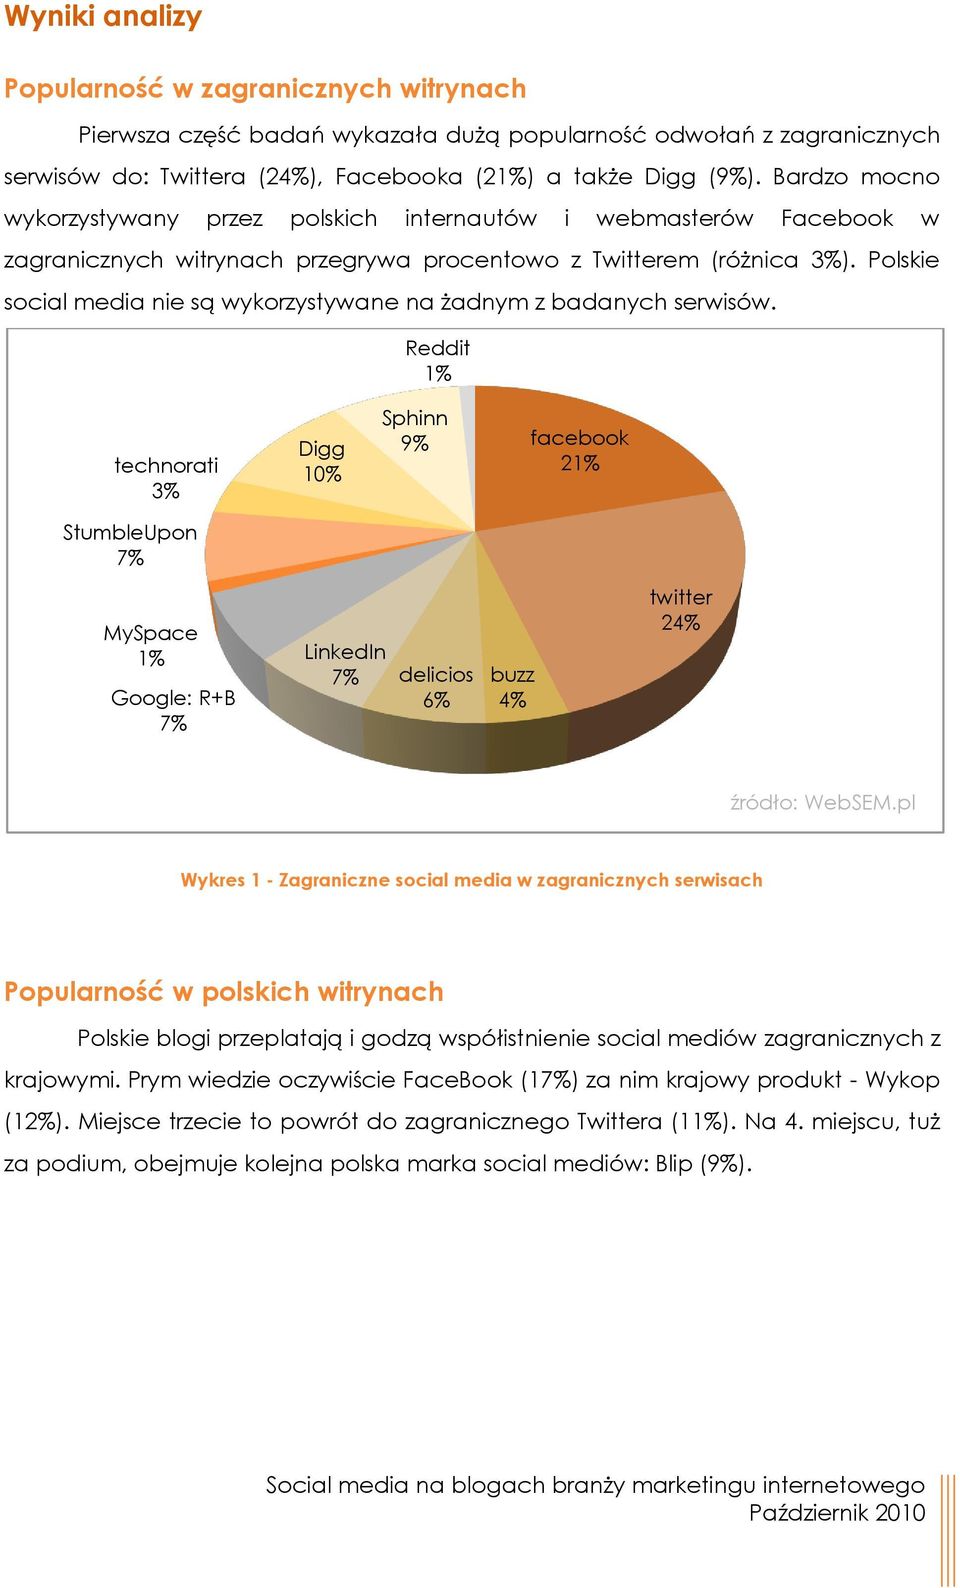 Polskie social media nie są wykorzystywane na żadnym z badanych serwisów.